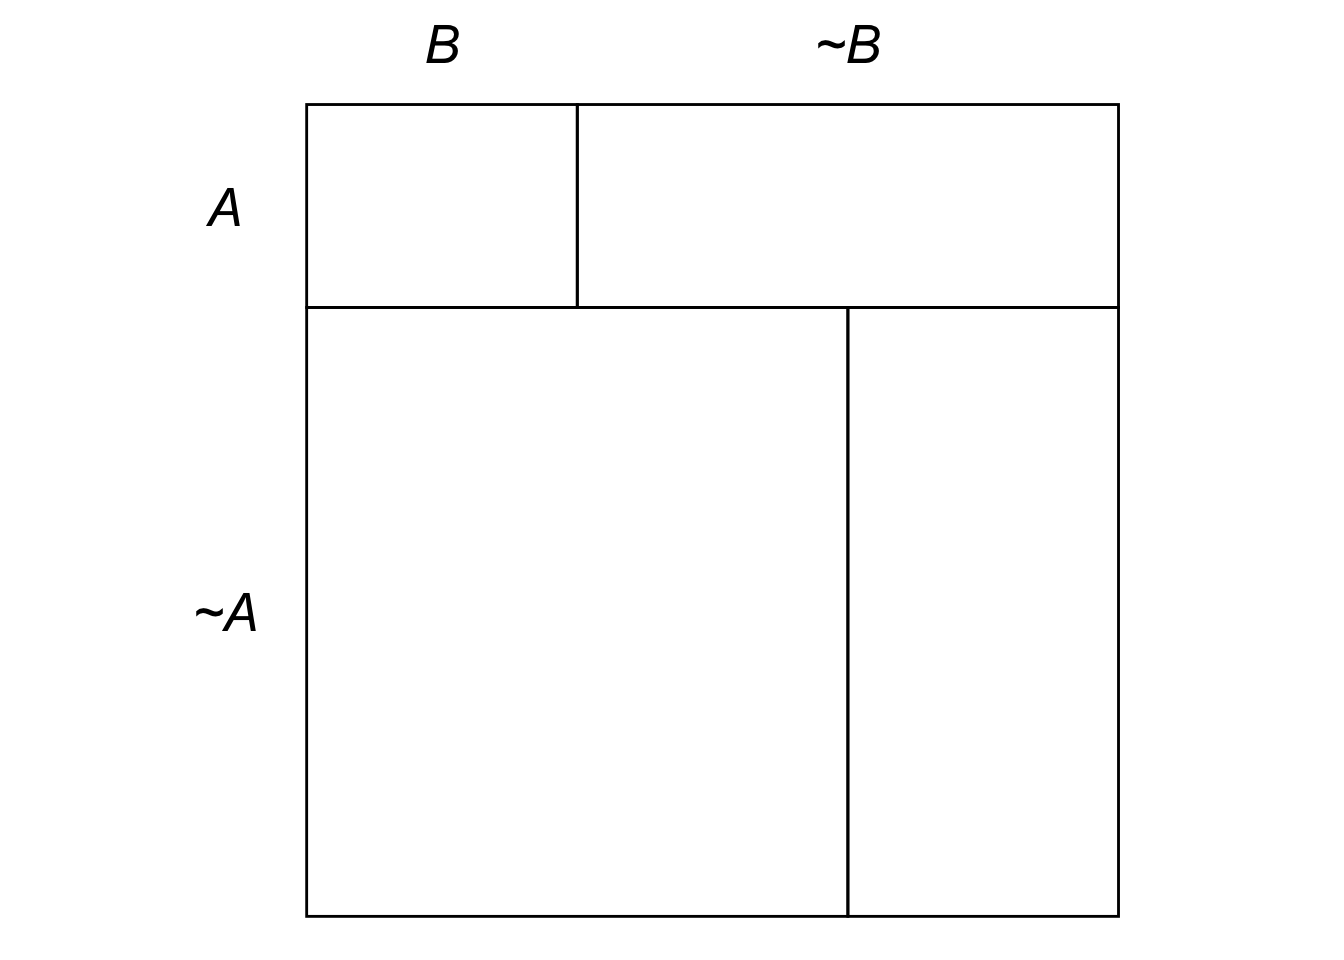 Example of an eikosogram.